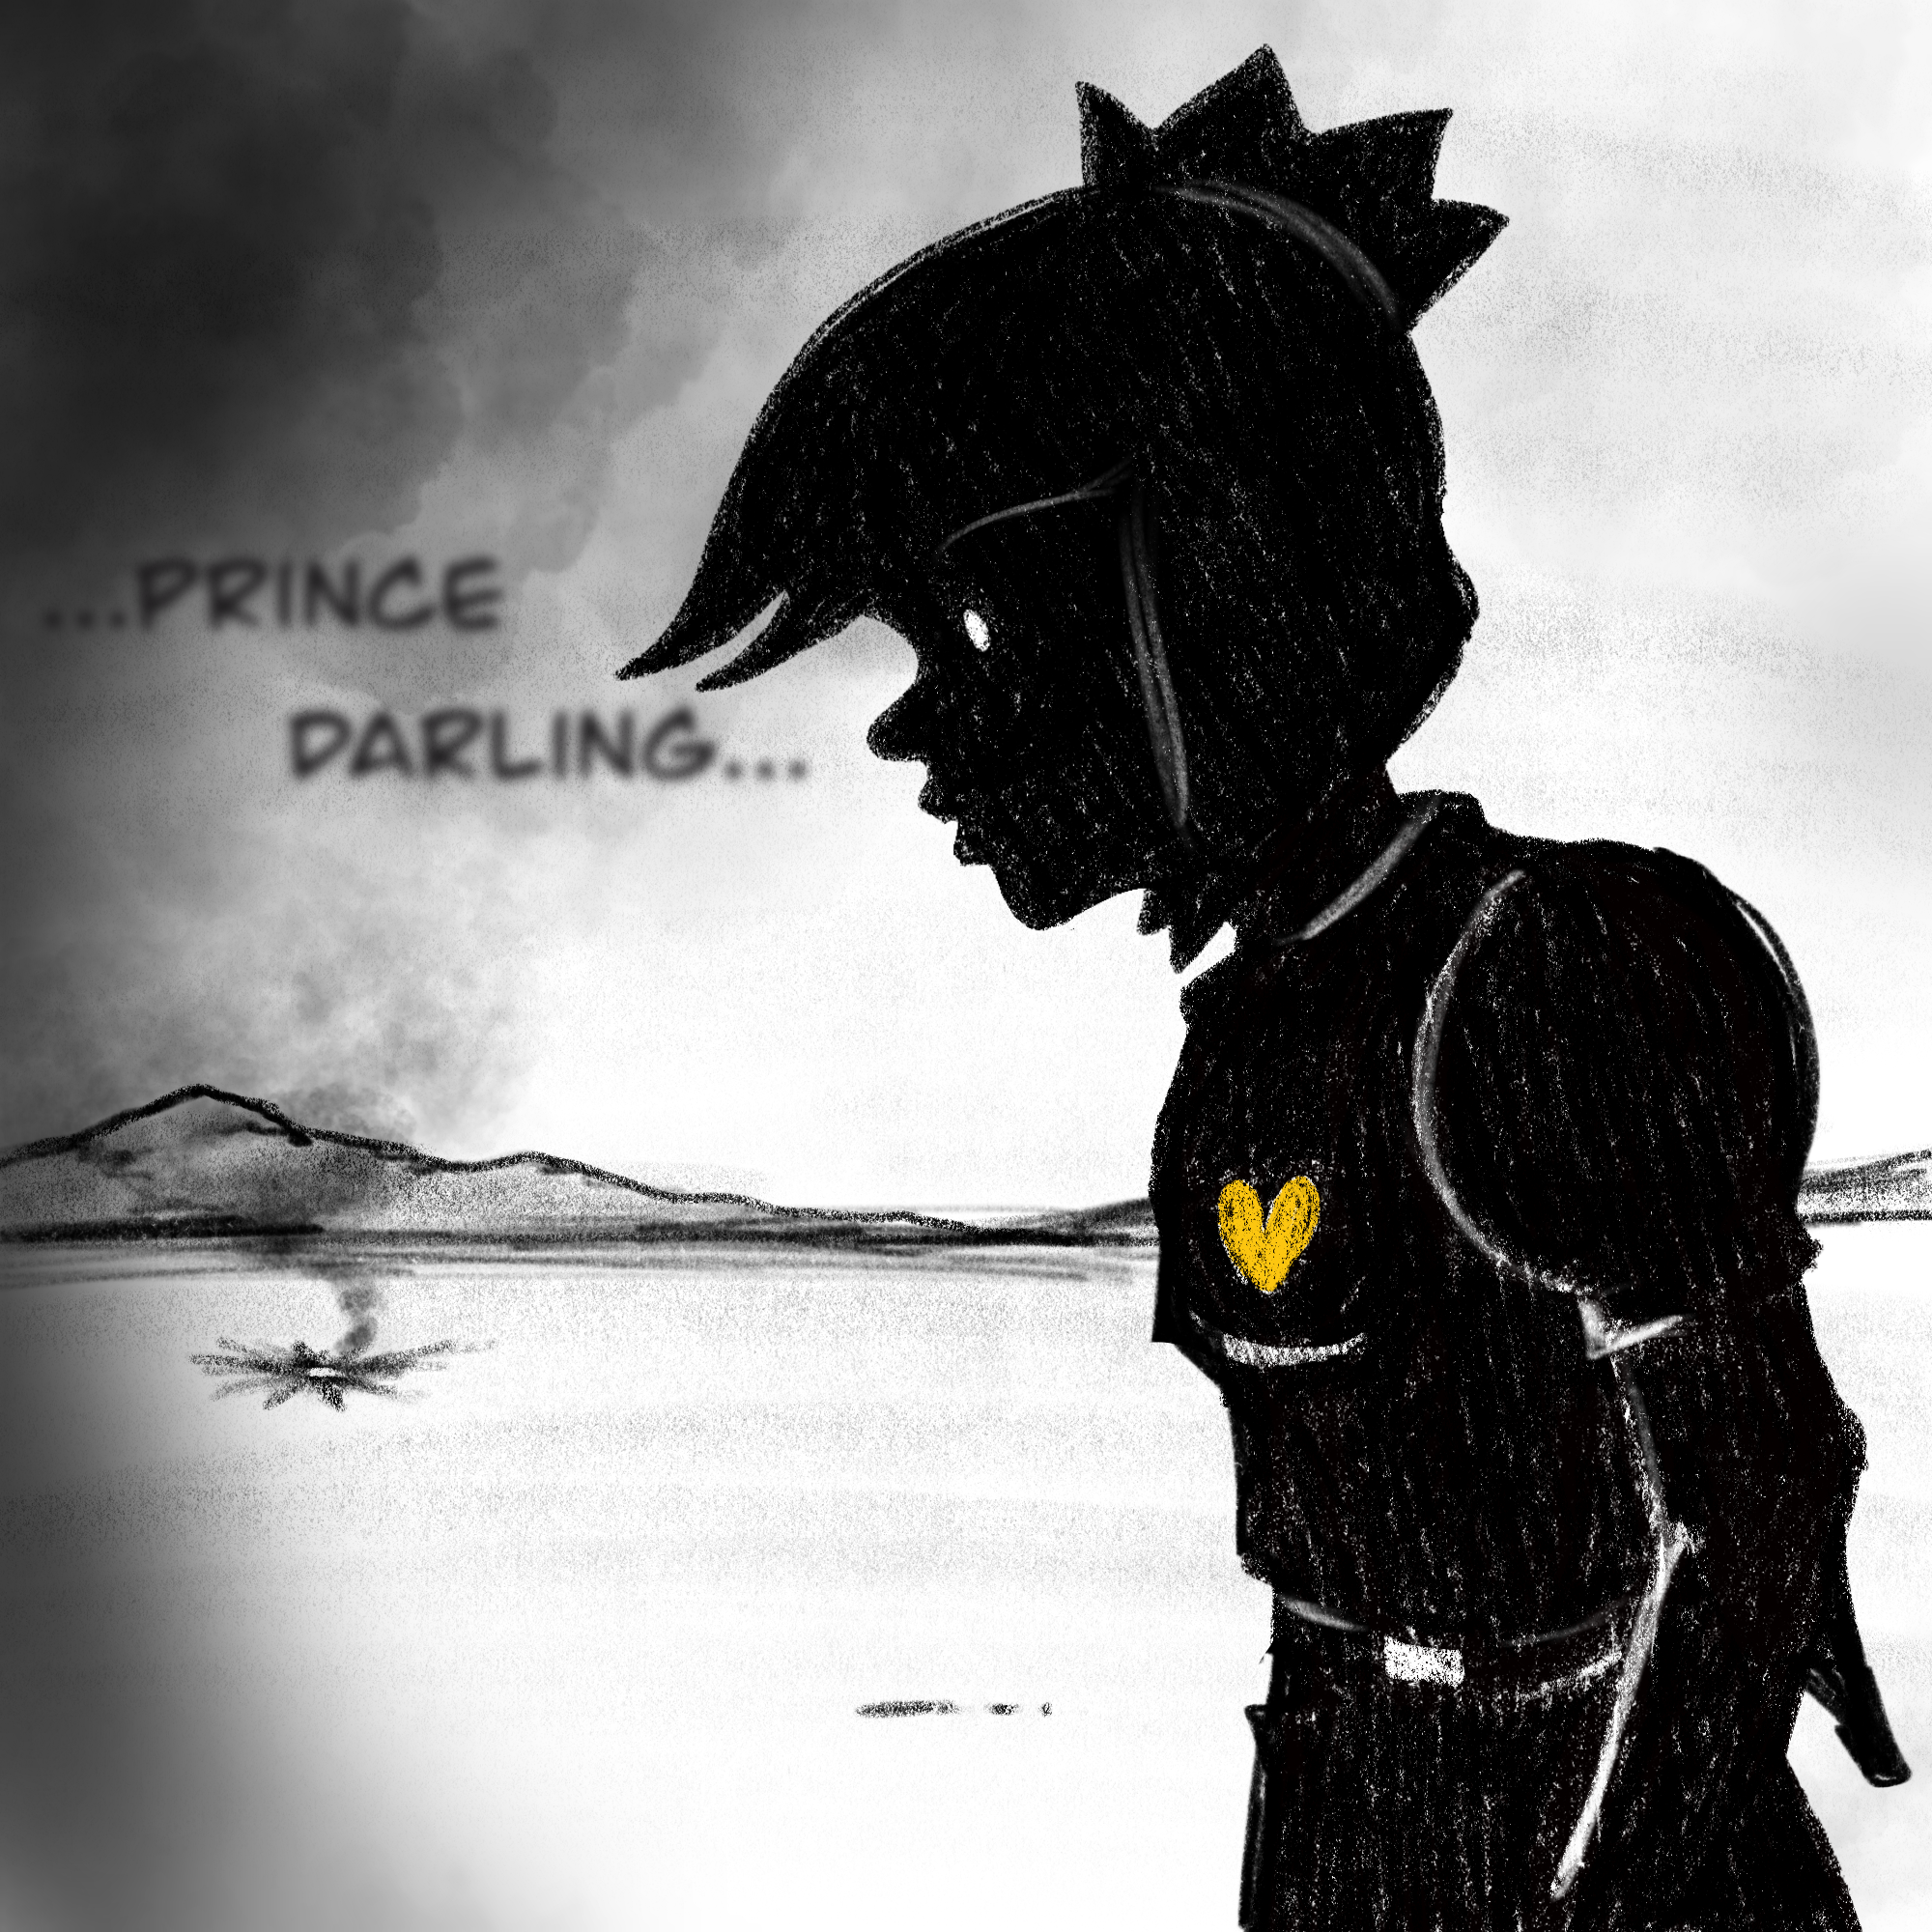 Darling comic 3.png